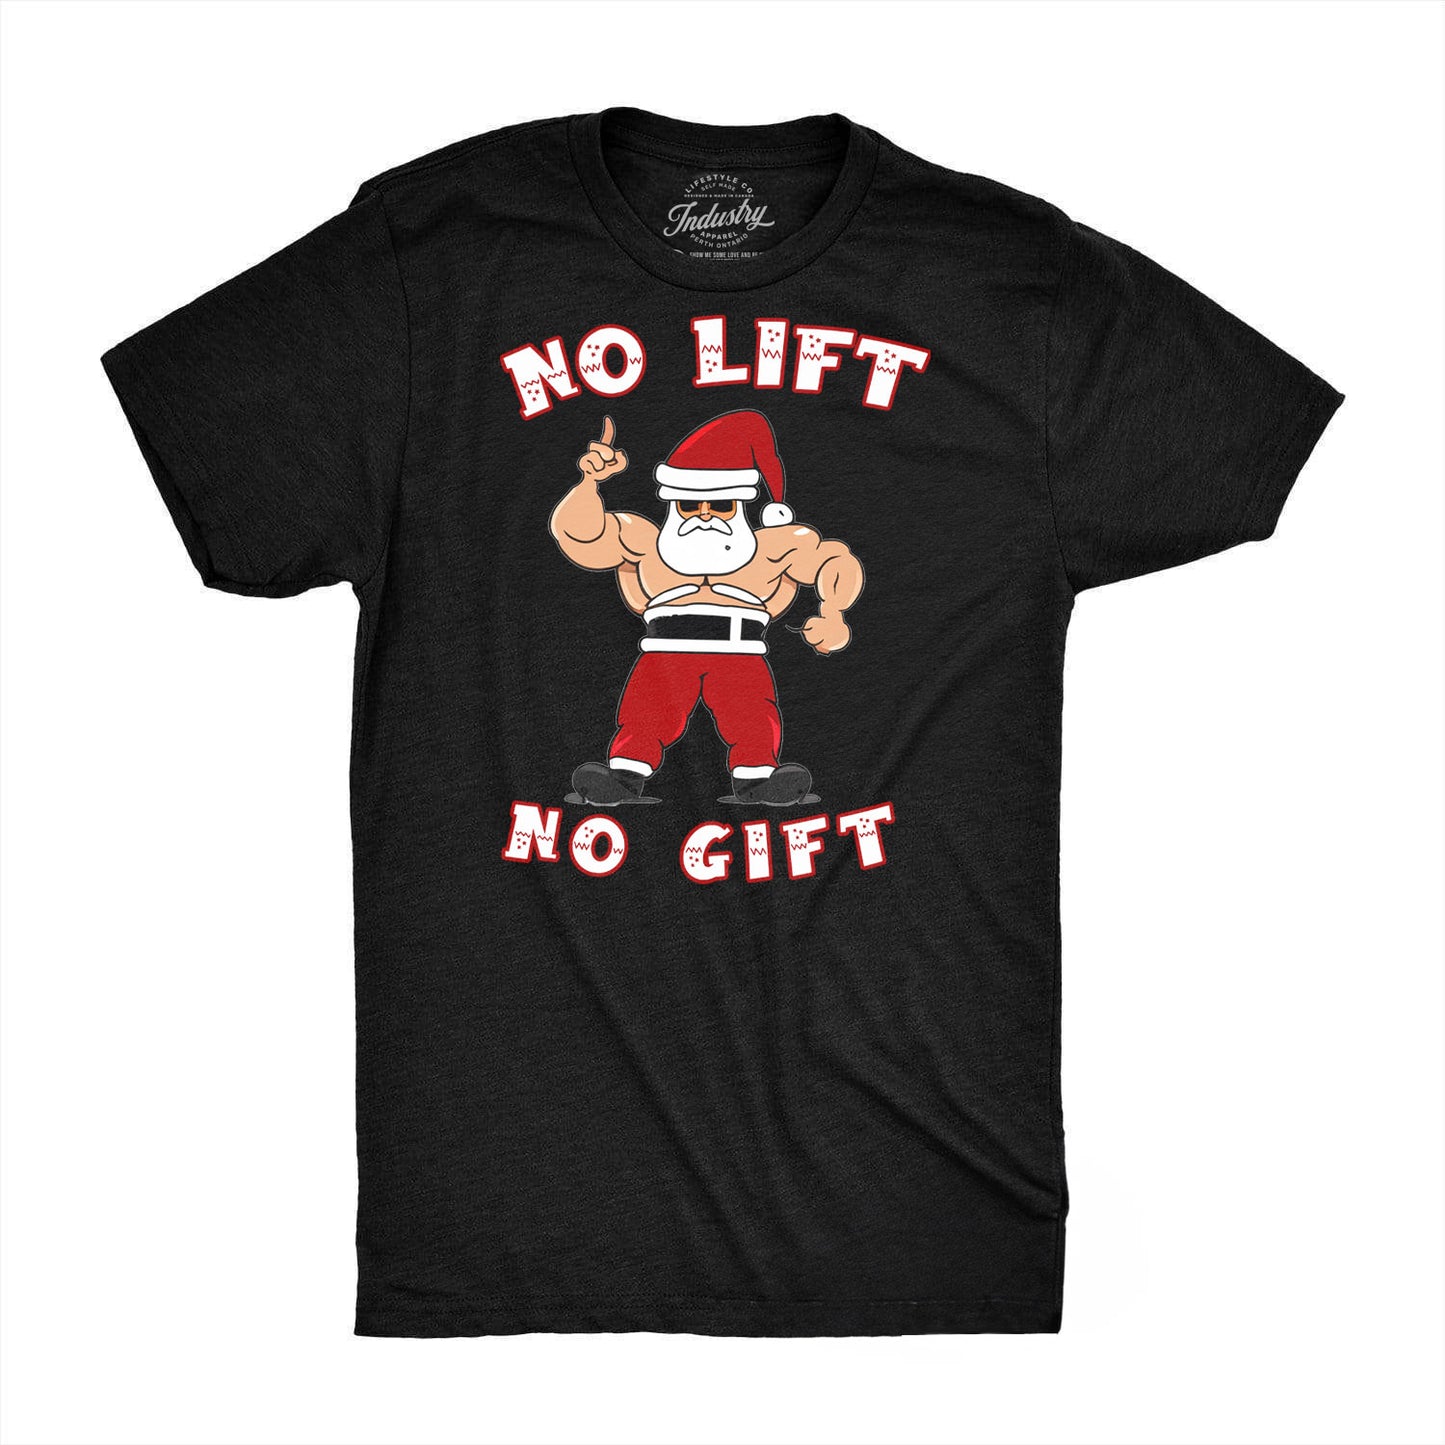 Holiday Tee - "No Lift No Gift"